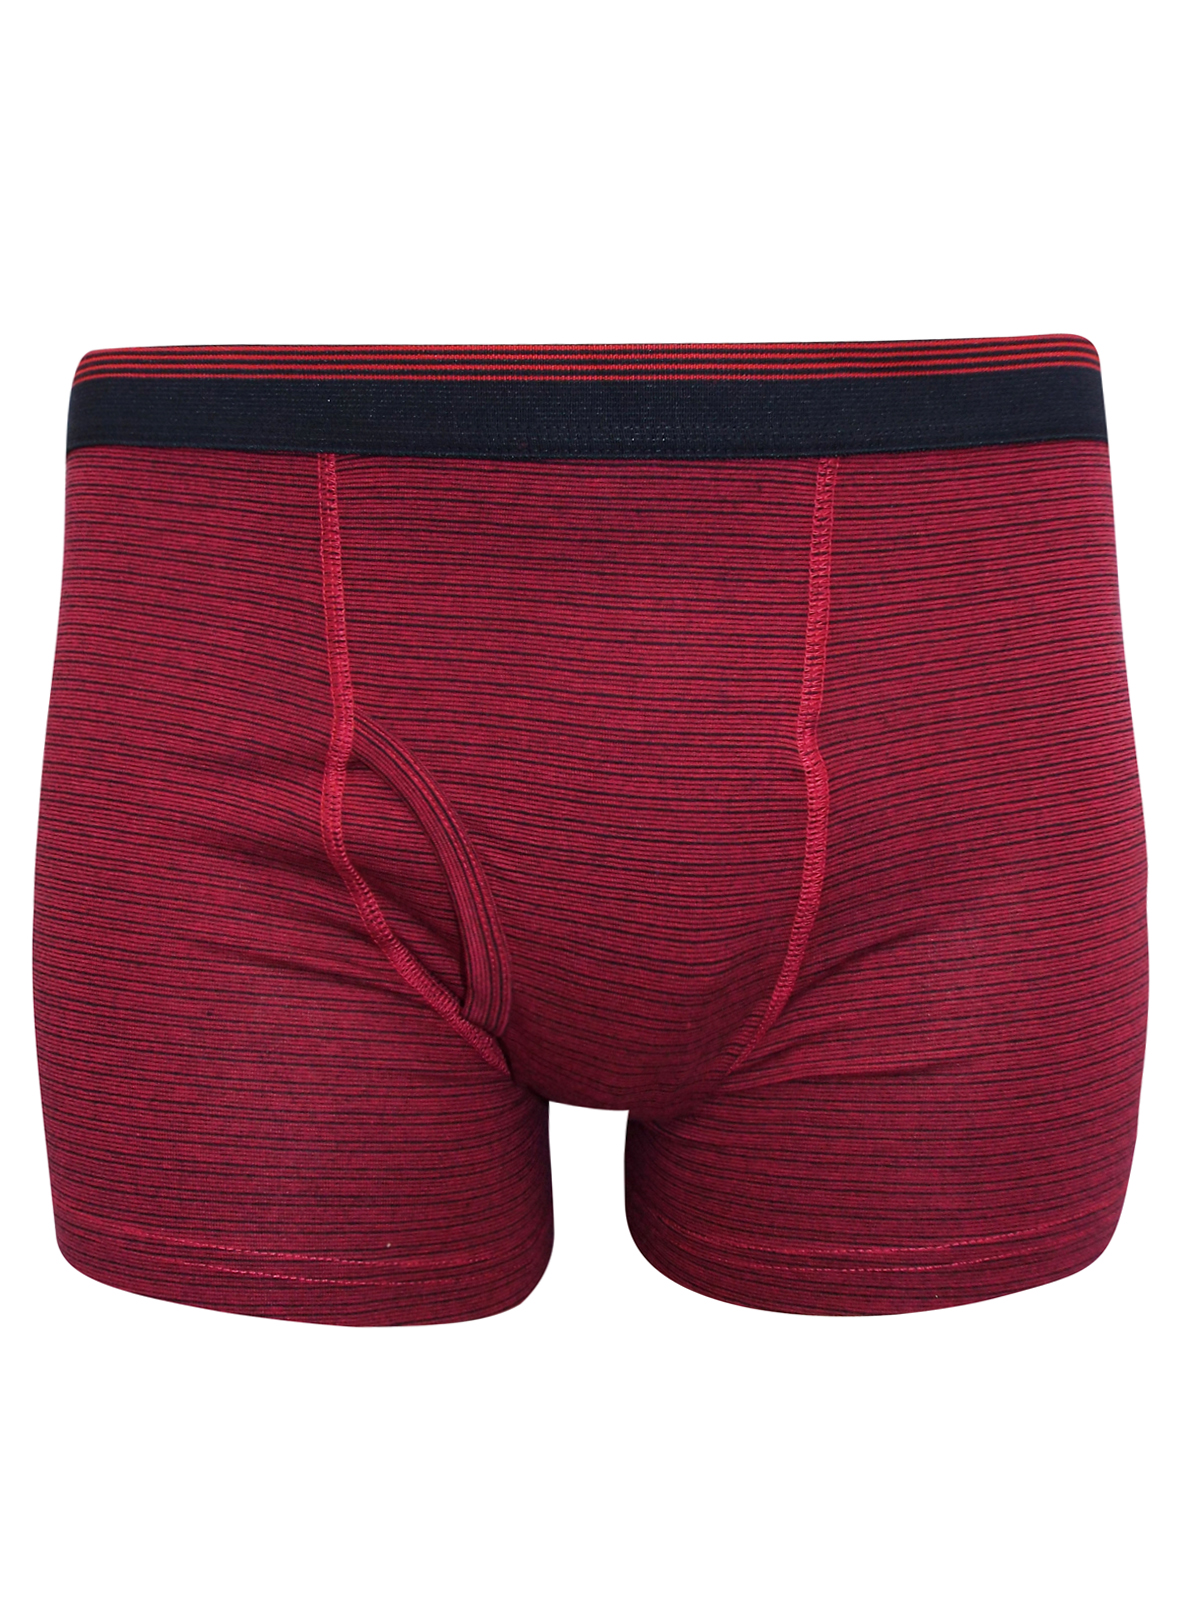 Debenhams - - D3benhams RED Cotton Rich Striped Boxers - Size Medium to 3XL